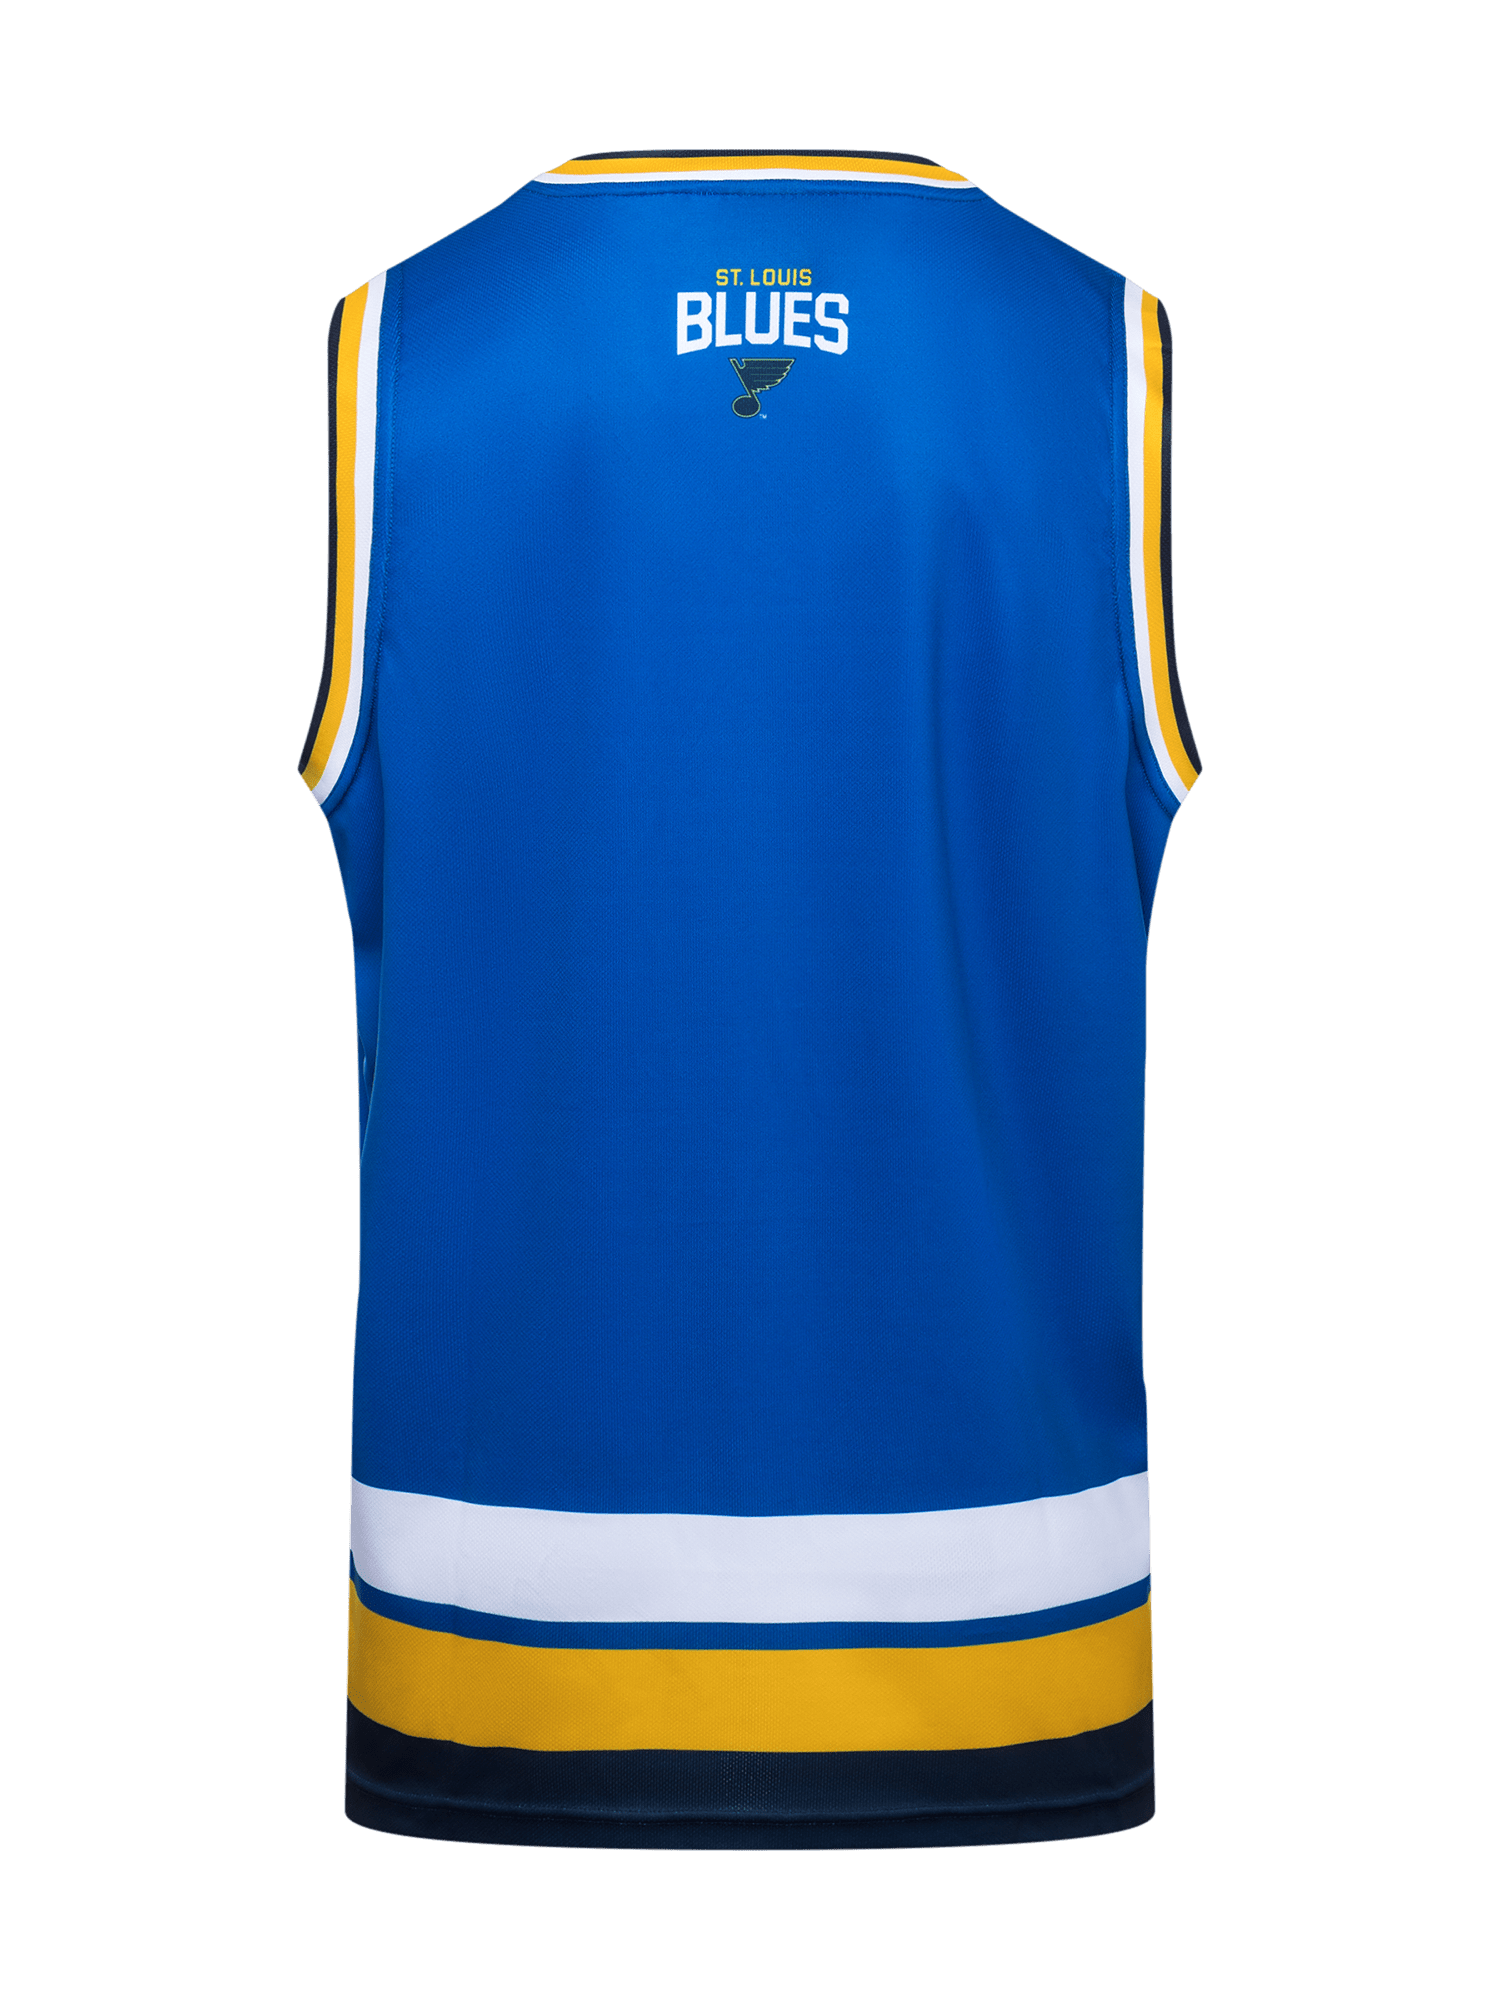 St. Louis Blues Merchandise, Blues Apparel, Jerseys & Gear